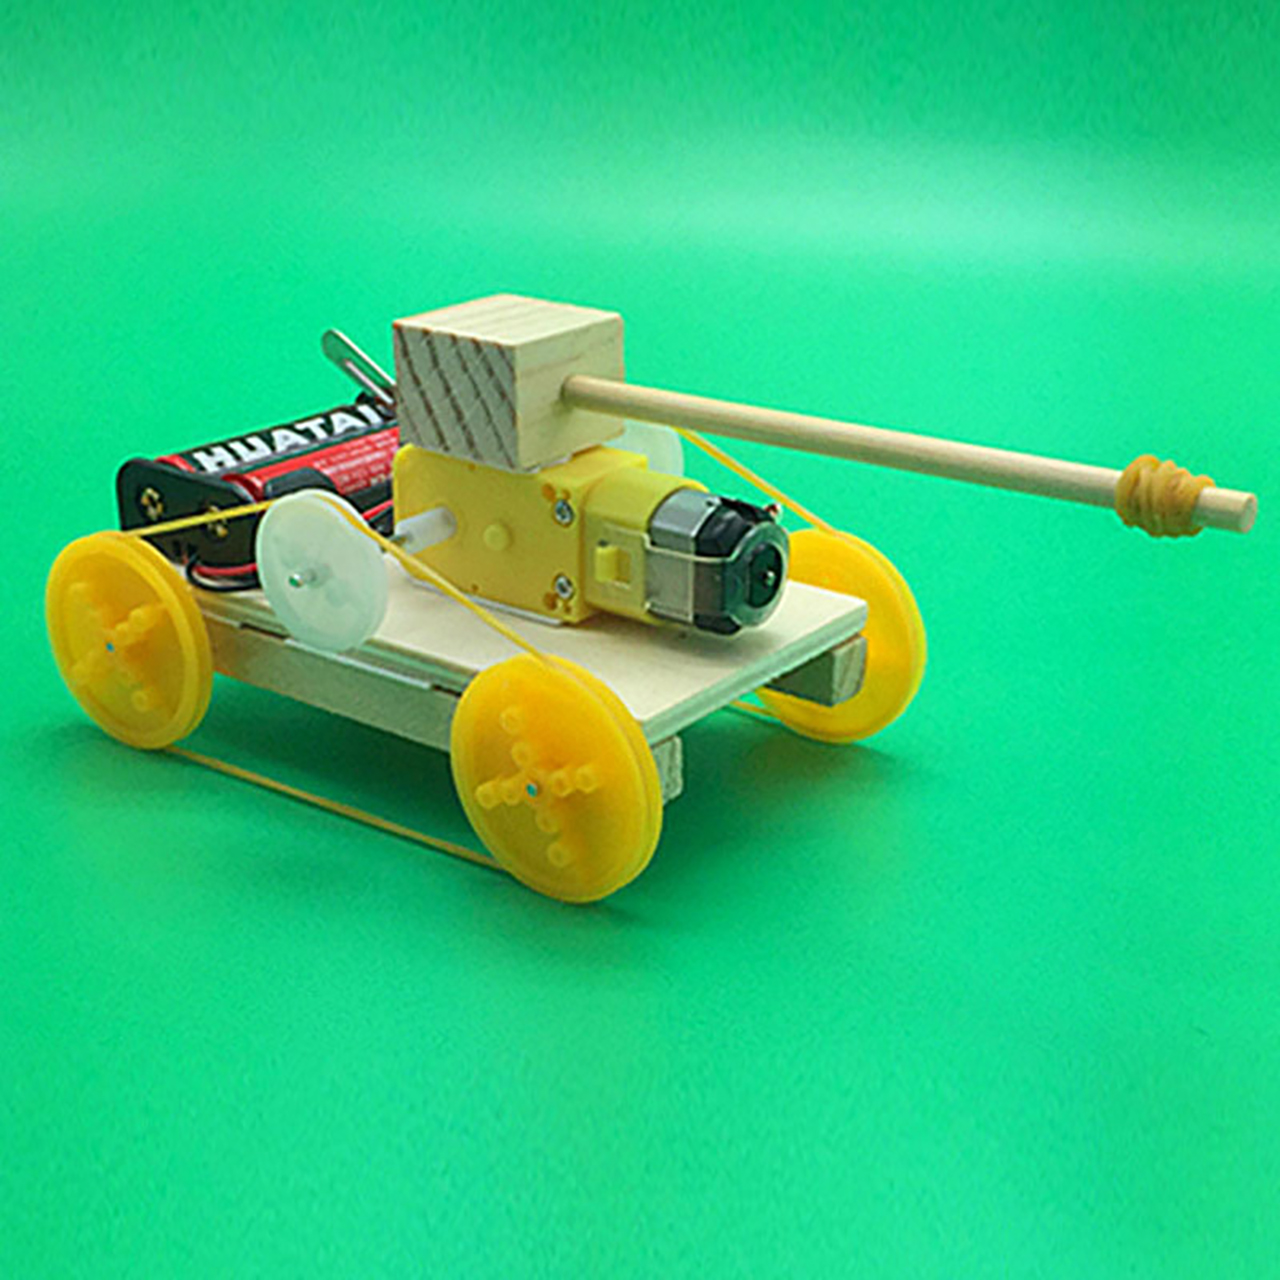 Đồ chơi trẻ em S22 thông minh sáng tạo STEM (STEAM) mô hình lắp ráp xe tăng bốn bánh bằng gỗ